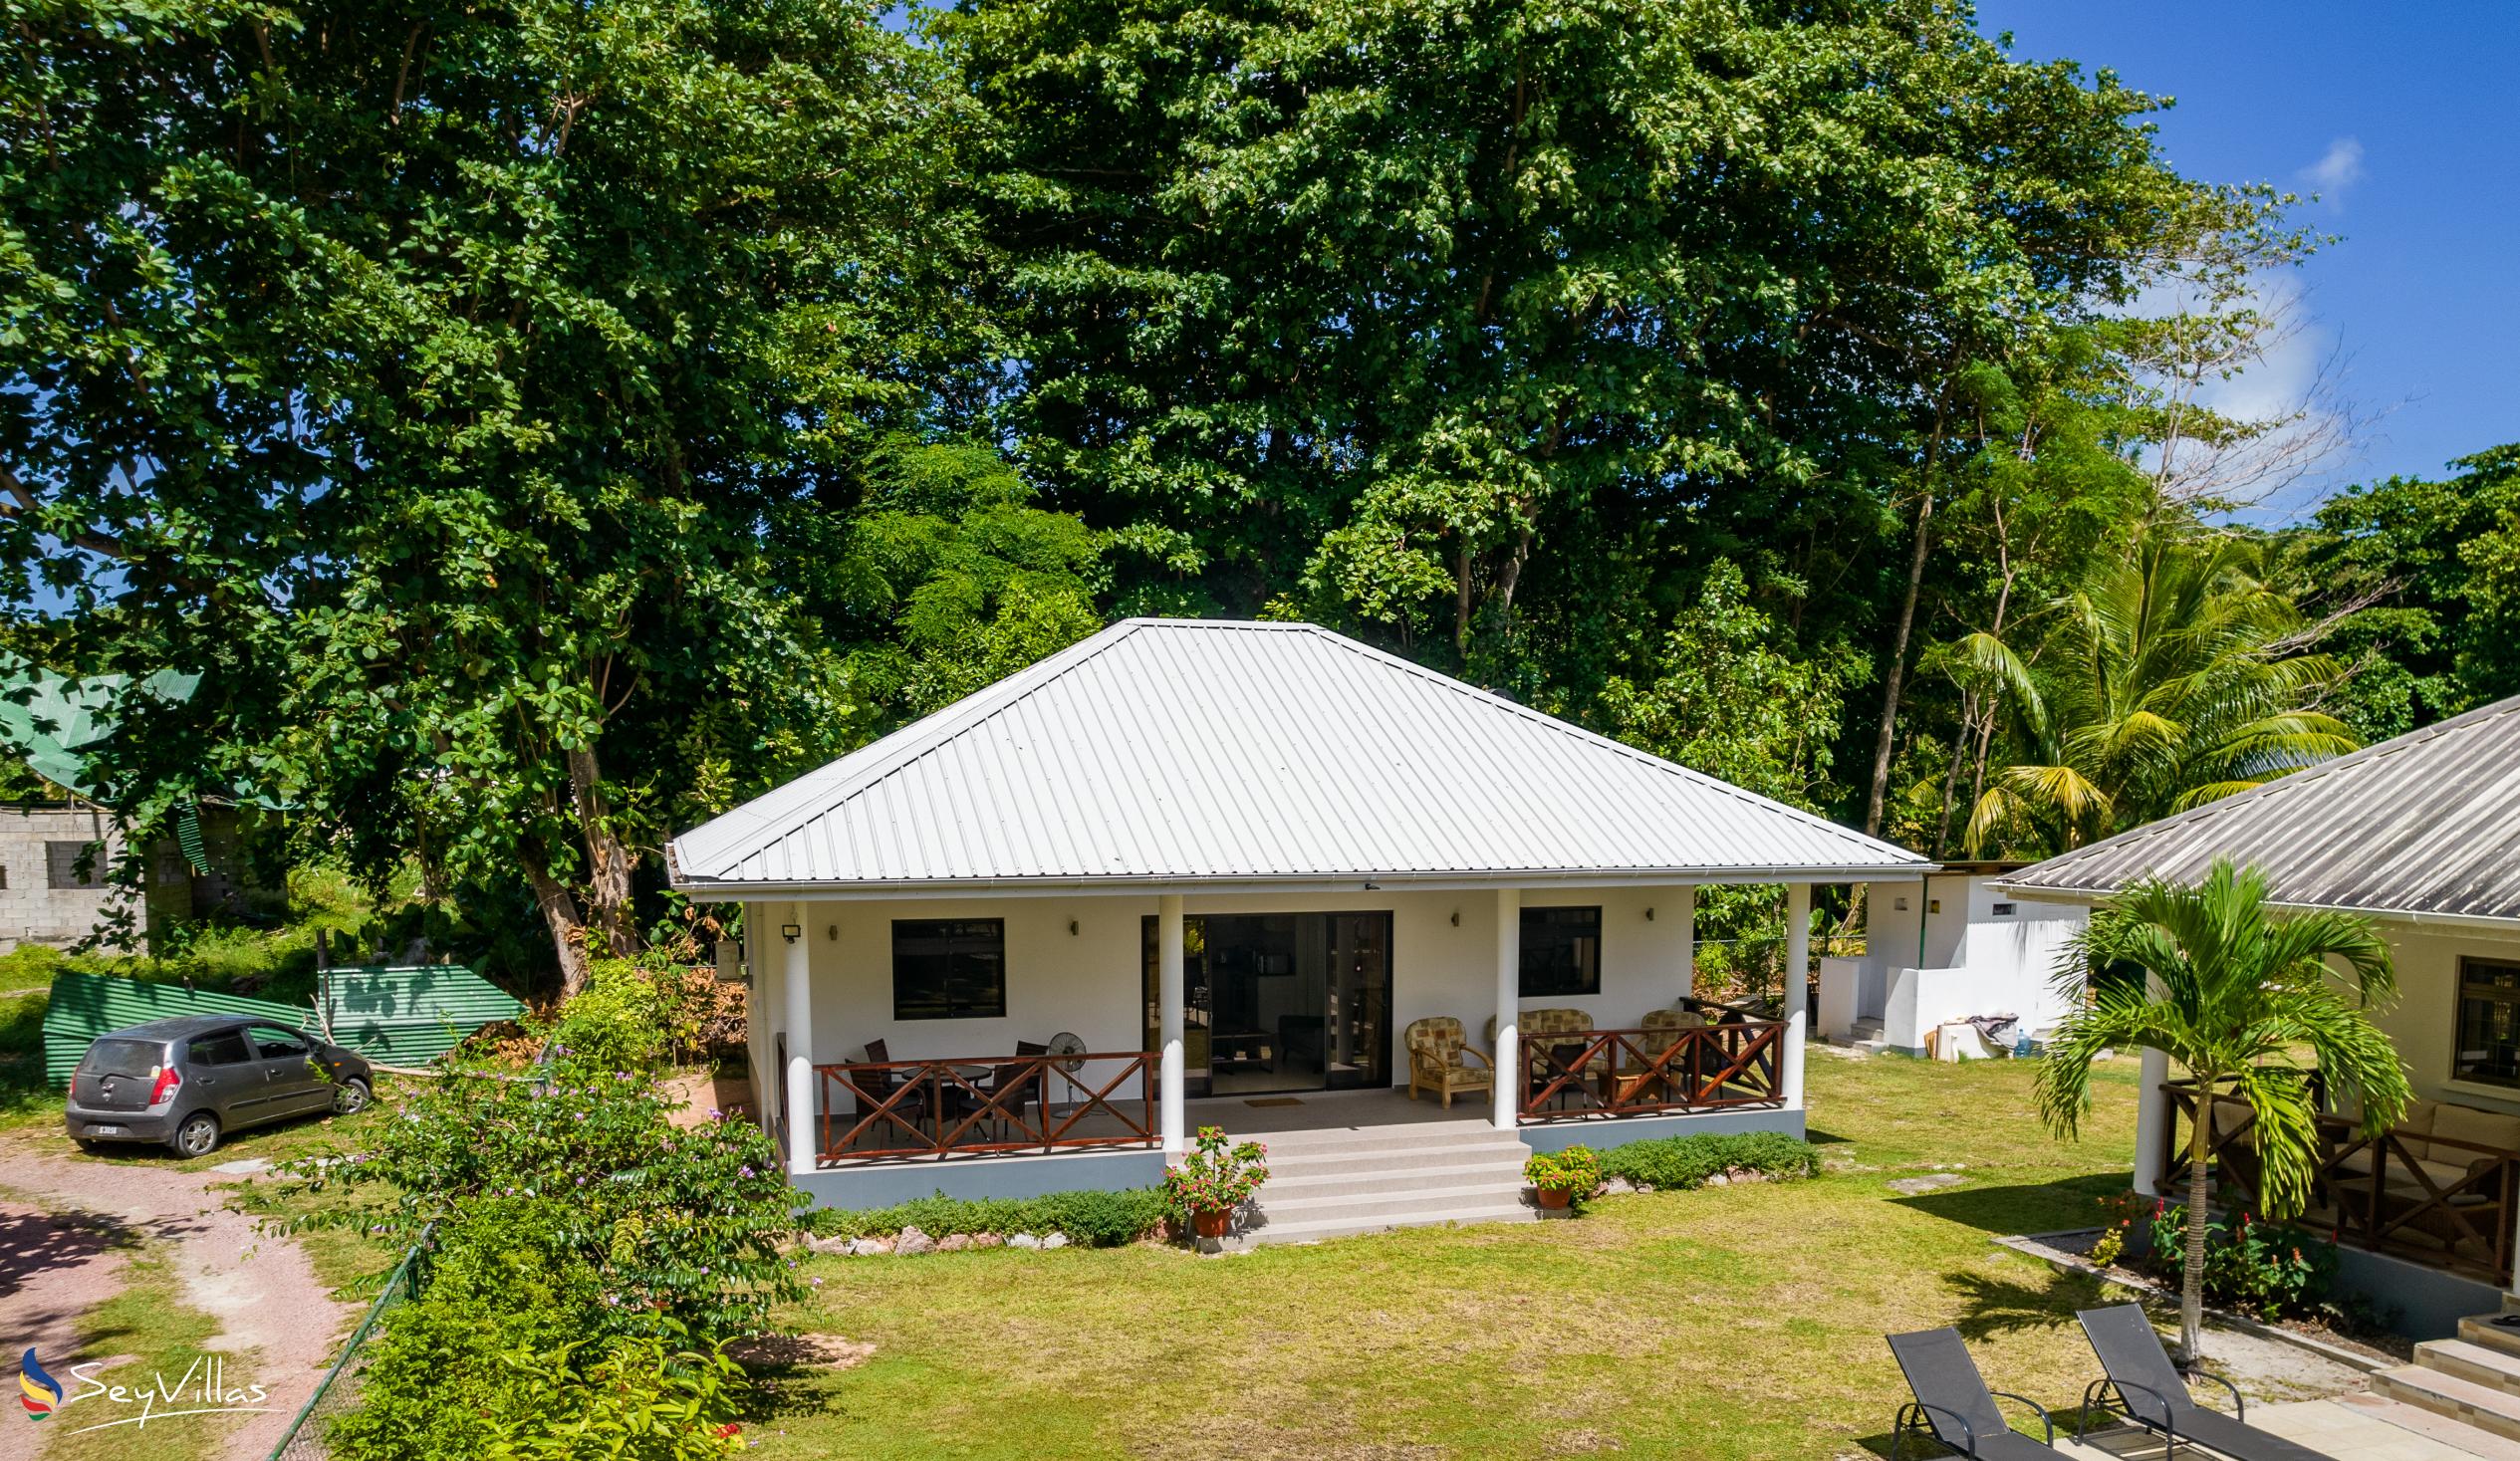 Foto 71: Villa Laure - Aussenbereich - Praslin (Seychellen)